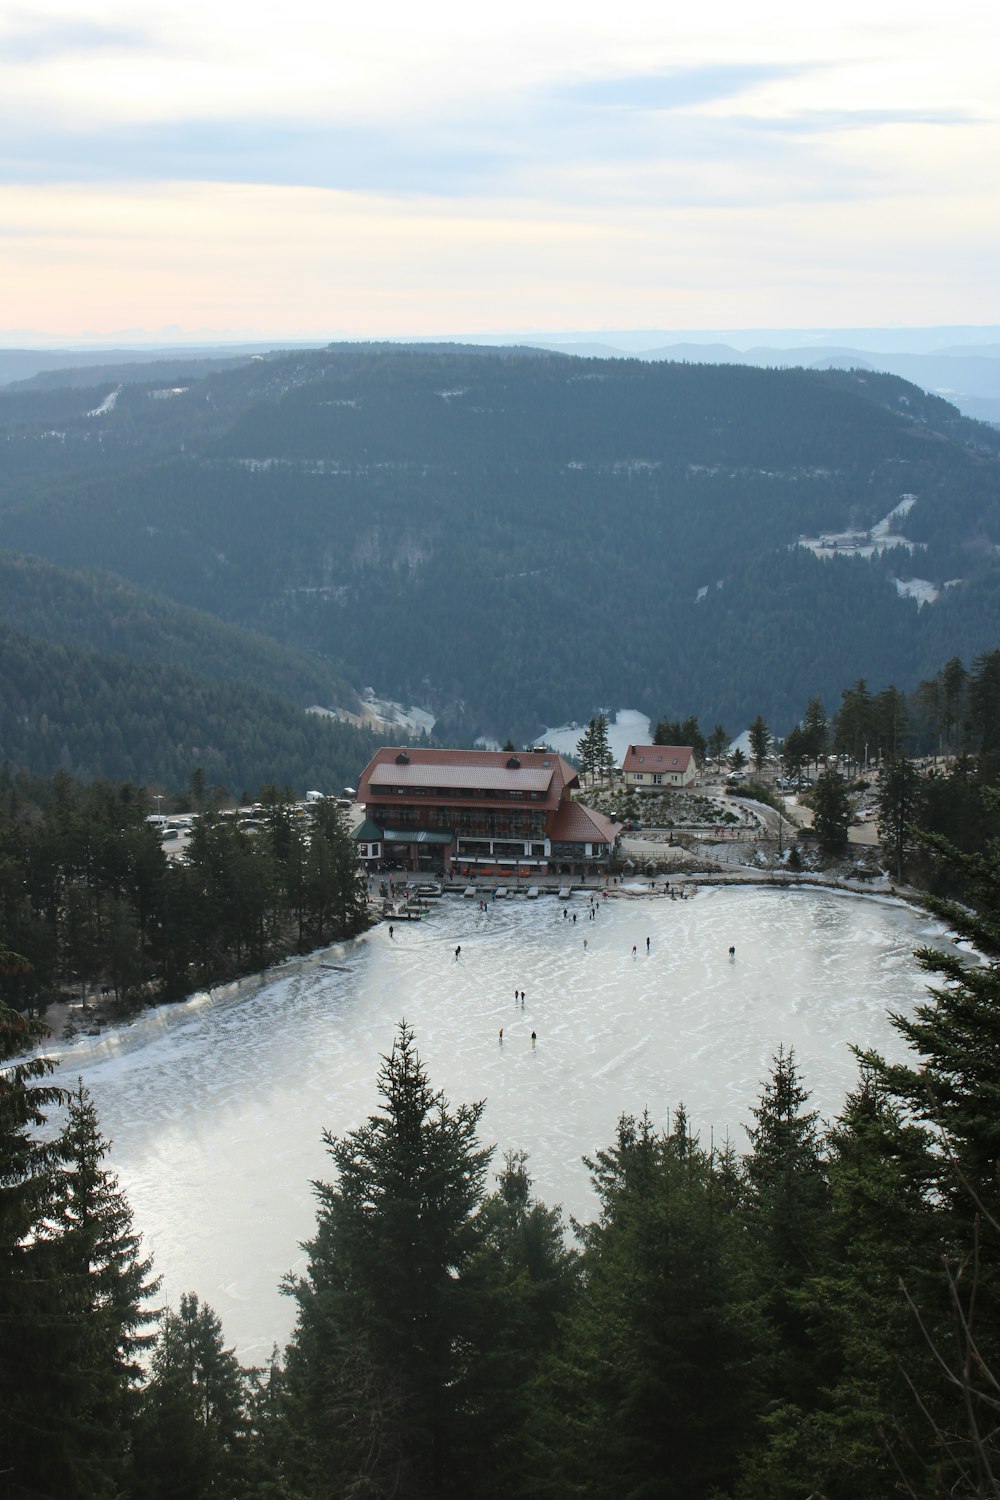 Blick auf ein Skigebiet von einem Hügel aus